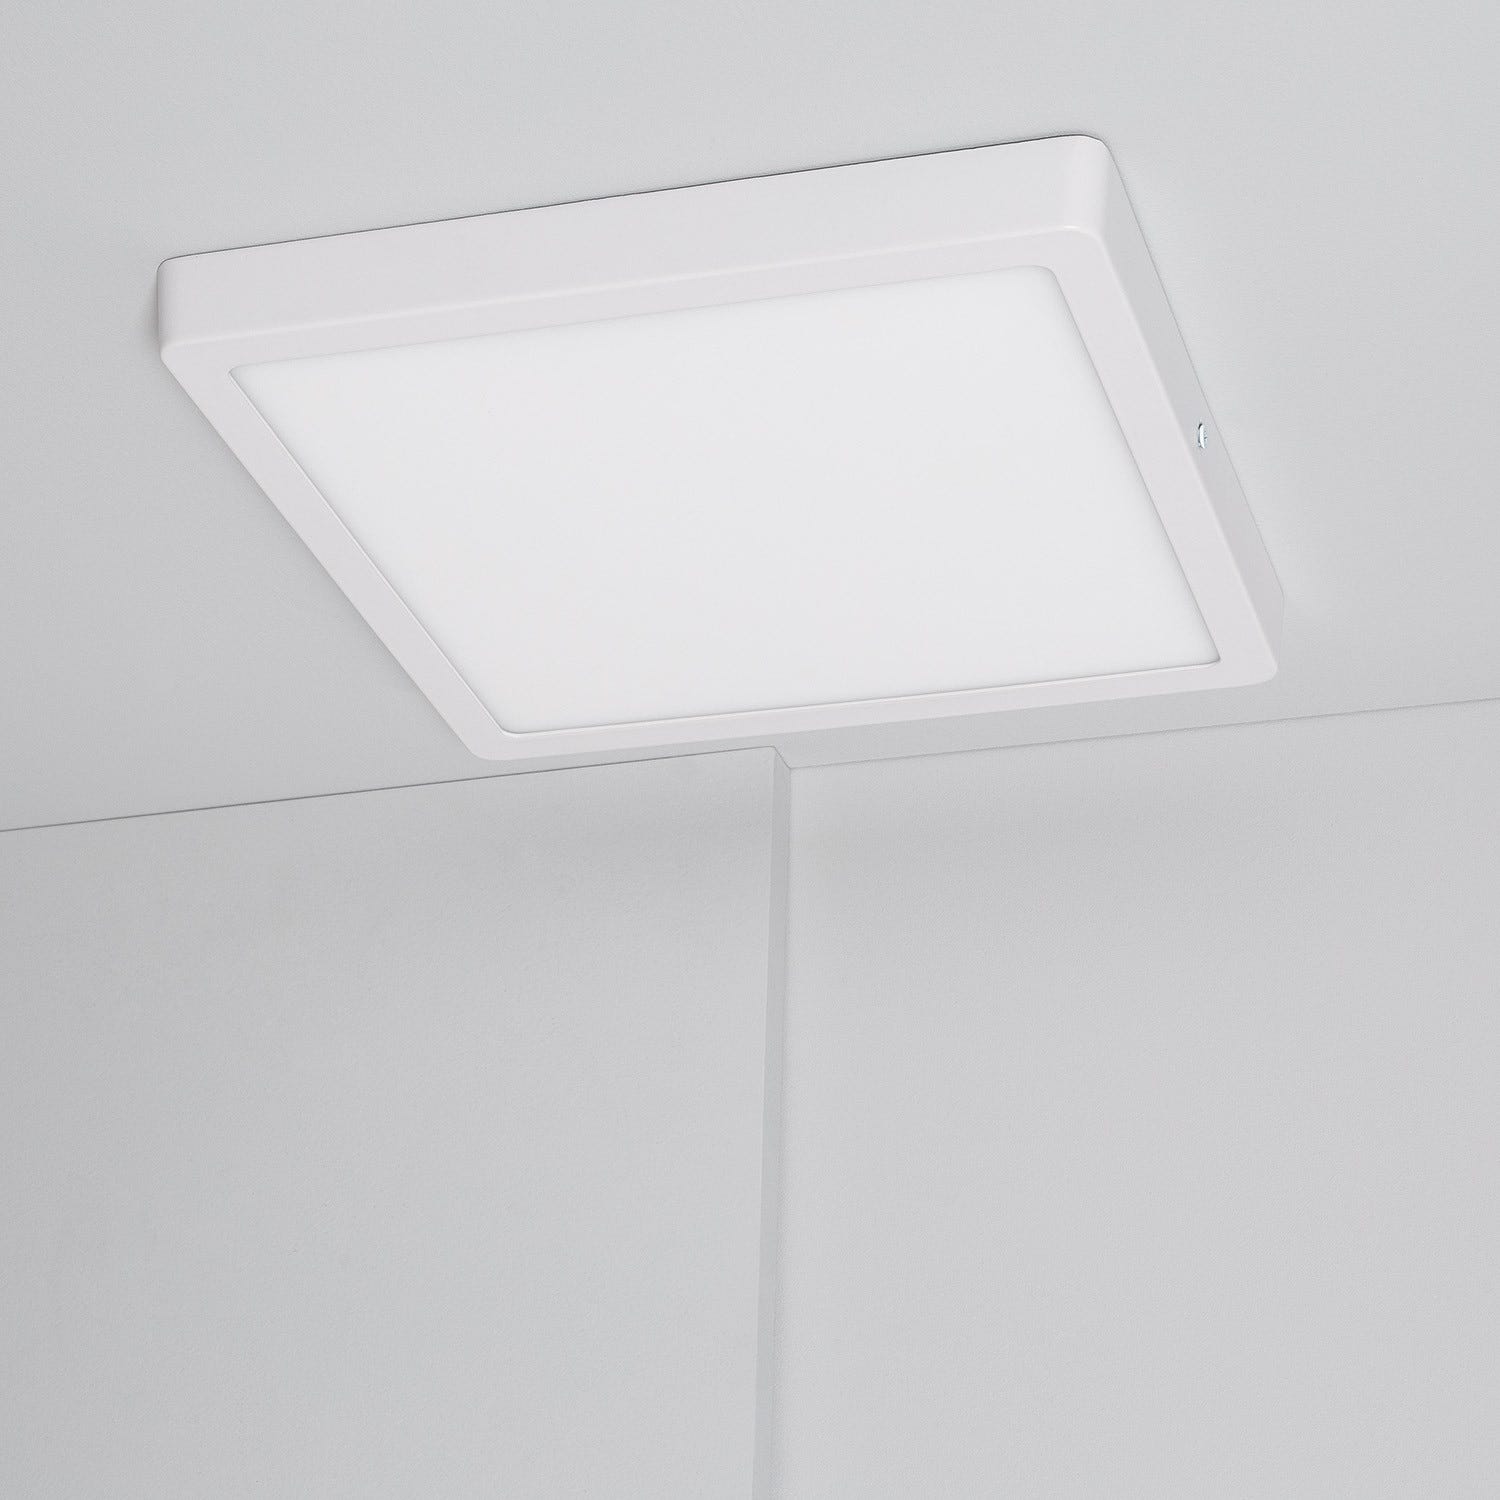 Acheter Plafonnier LED avec Surface Carré 30W Osram - Lampe de Plafond